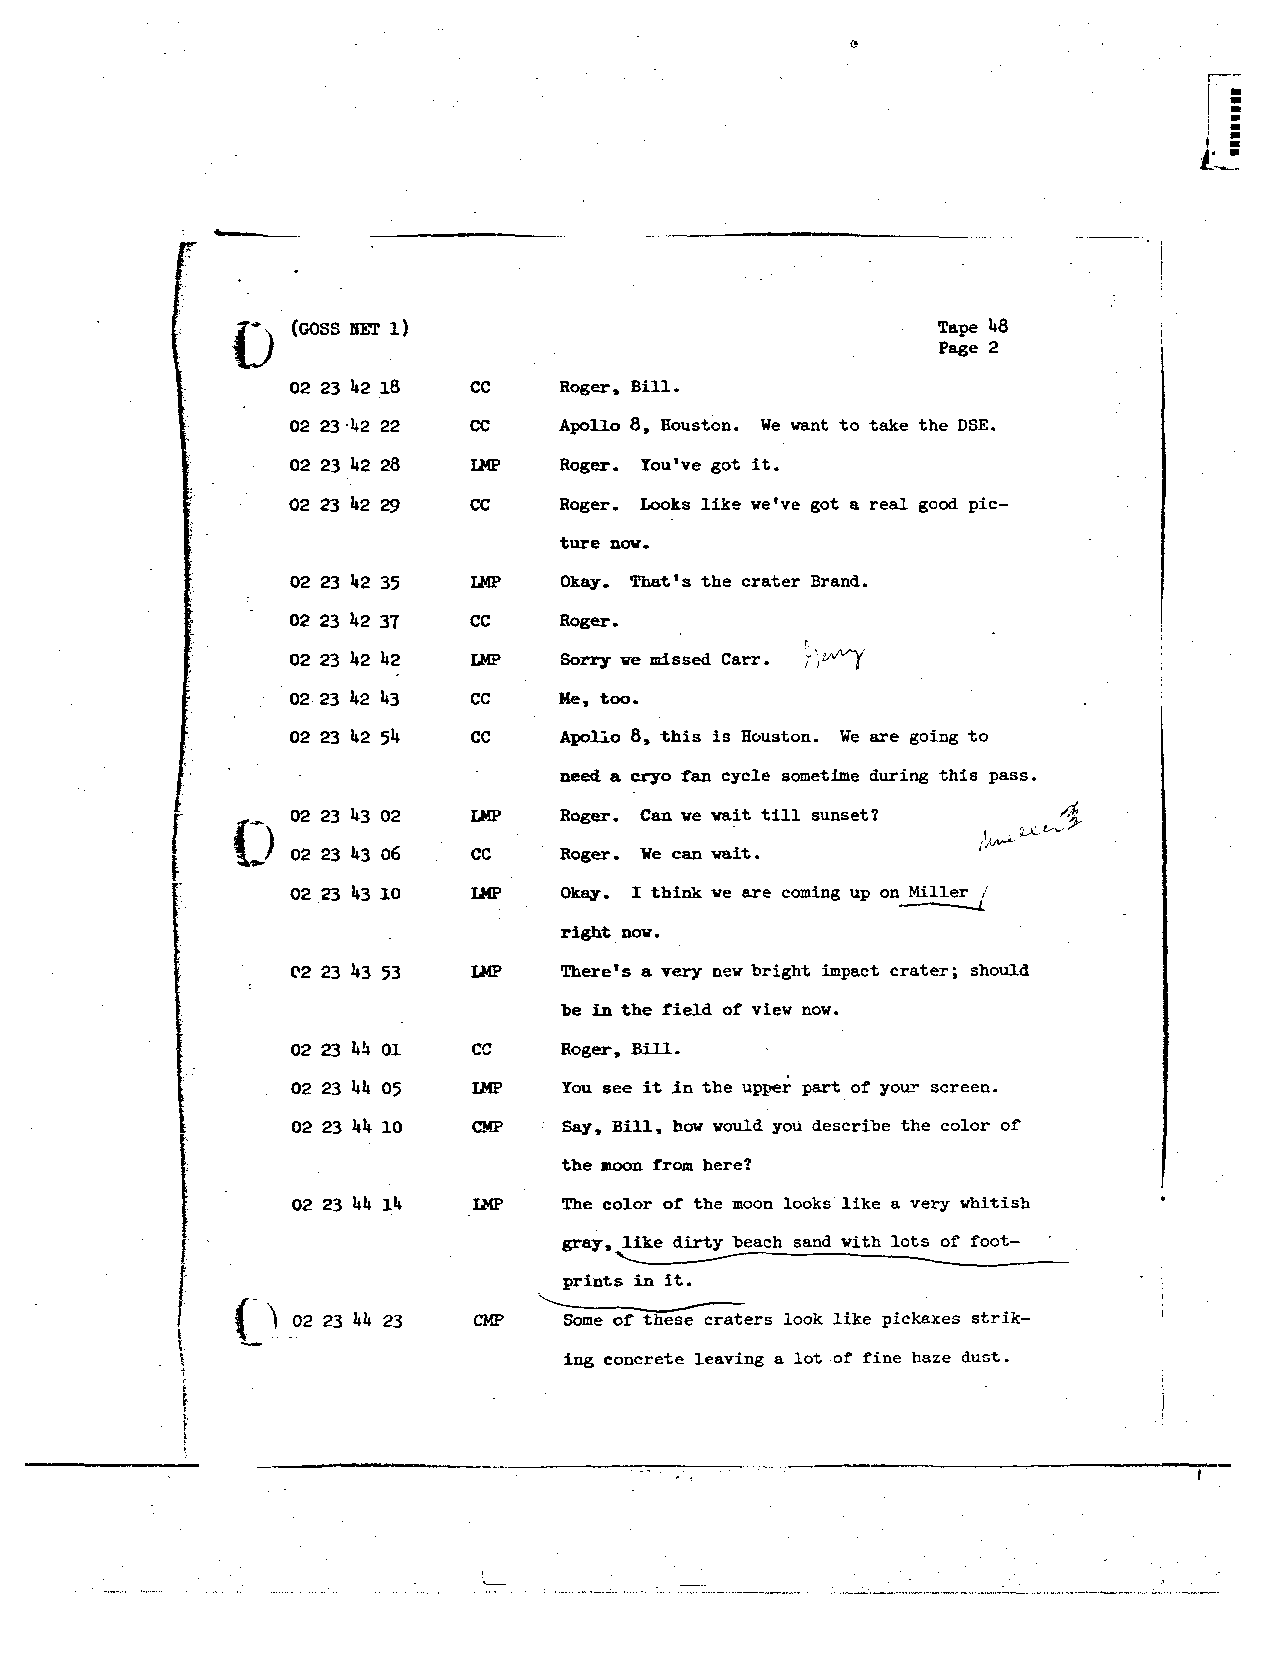 Page 374 of Apollo 8’s original transcript